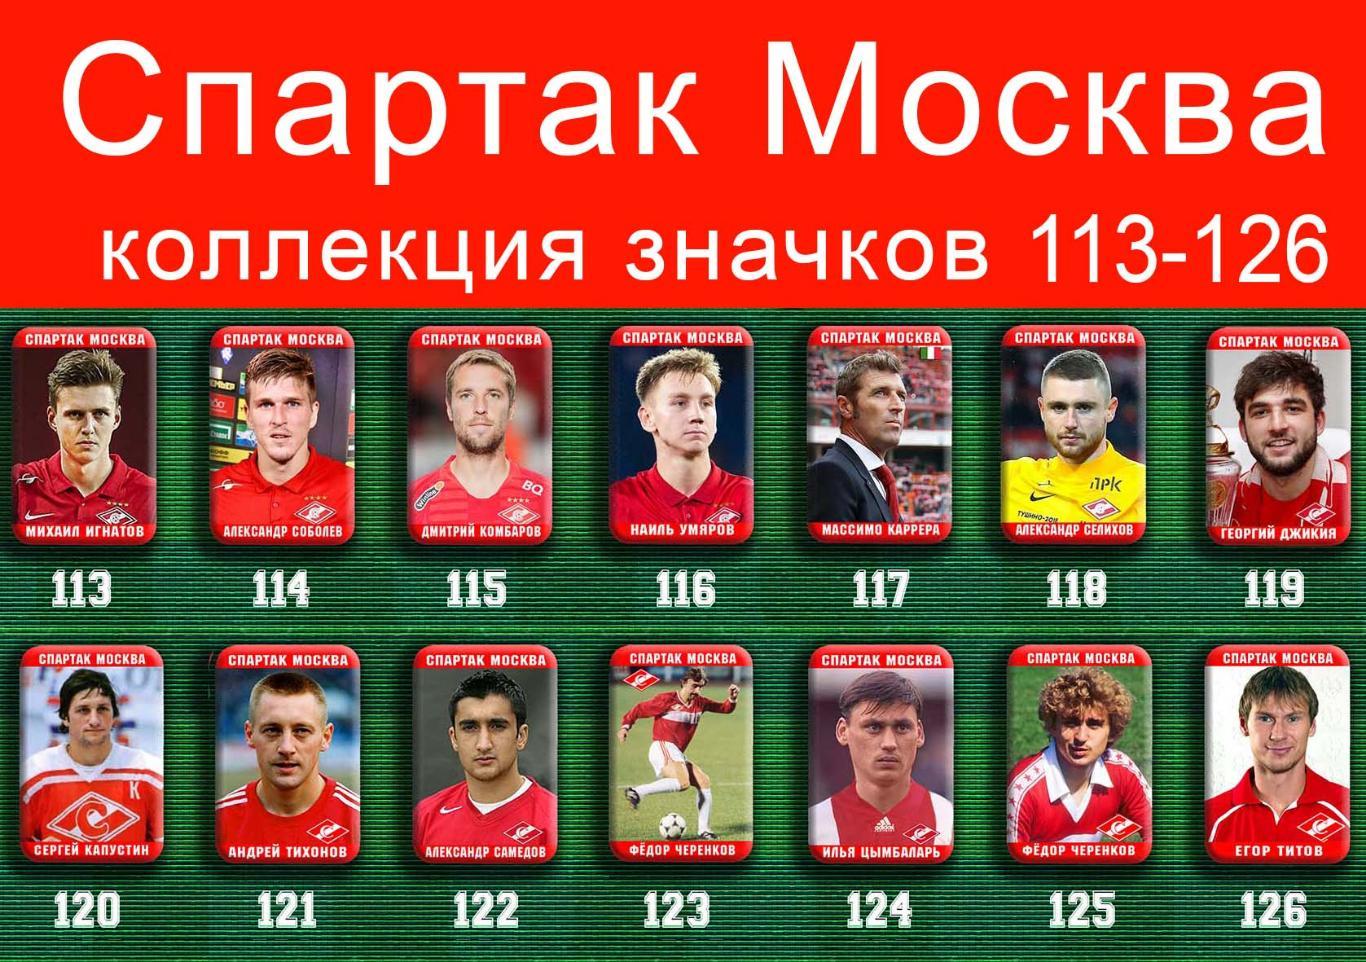 Спартак Москва 159 значков - 113-126